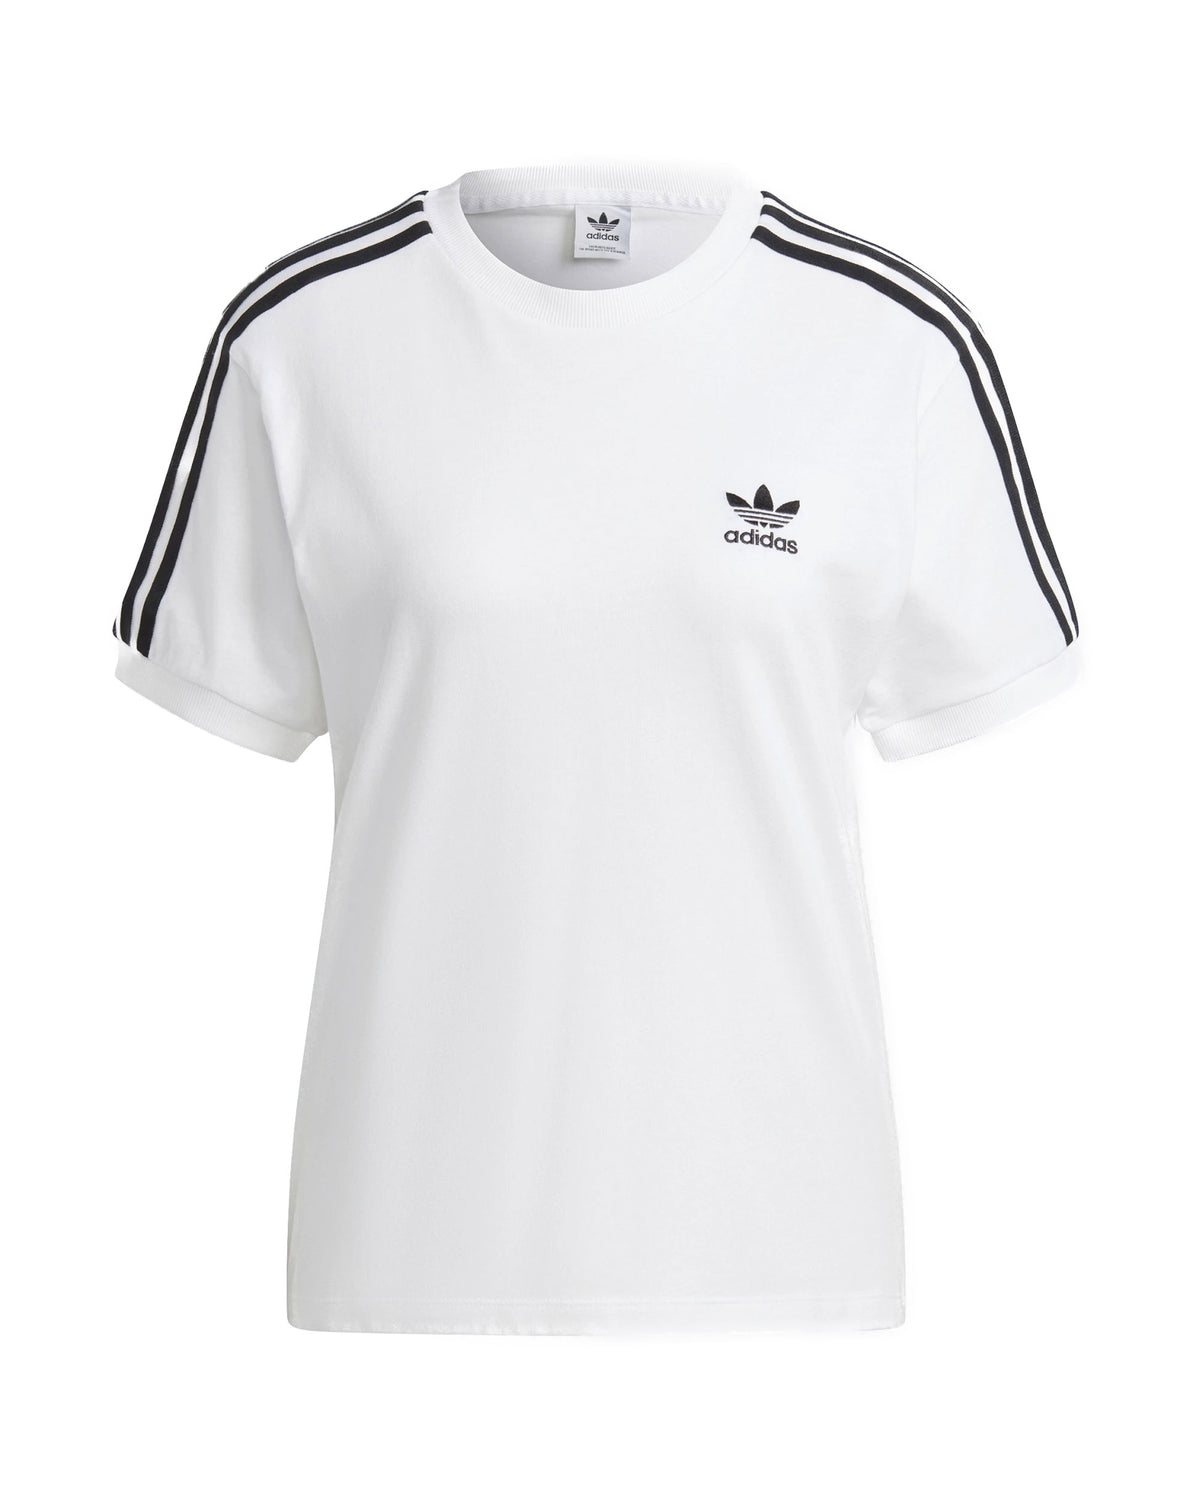 Adidas Originals 3 Stripes T-Shirt White